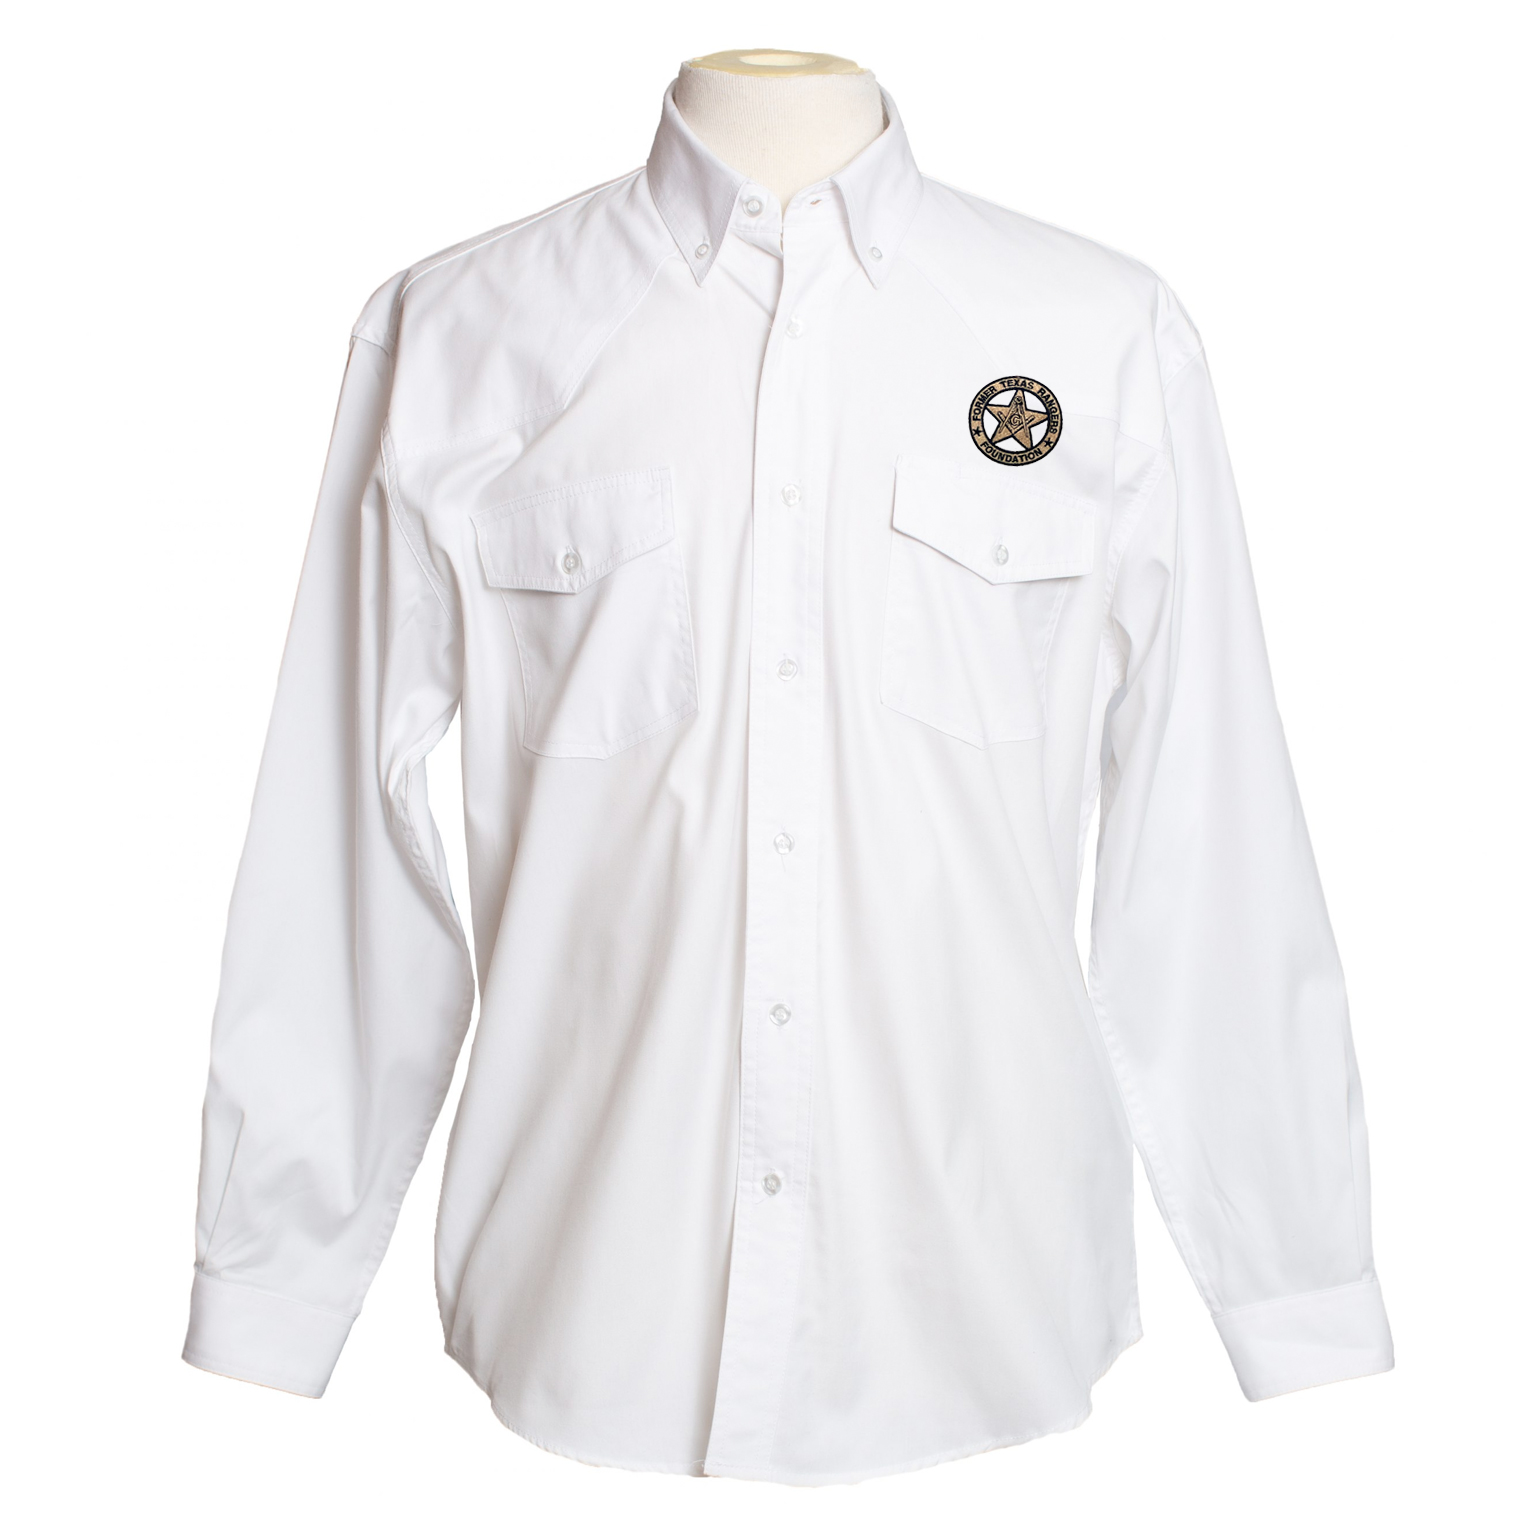 Men's Dress Western Long Sleeve White Shirt – Former Texas Rangers